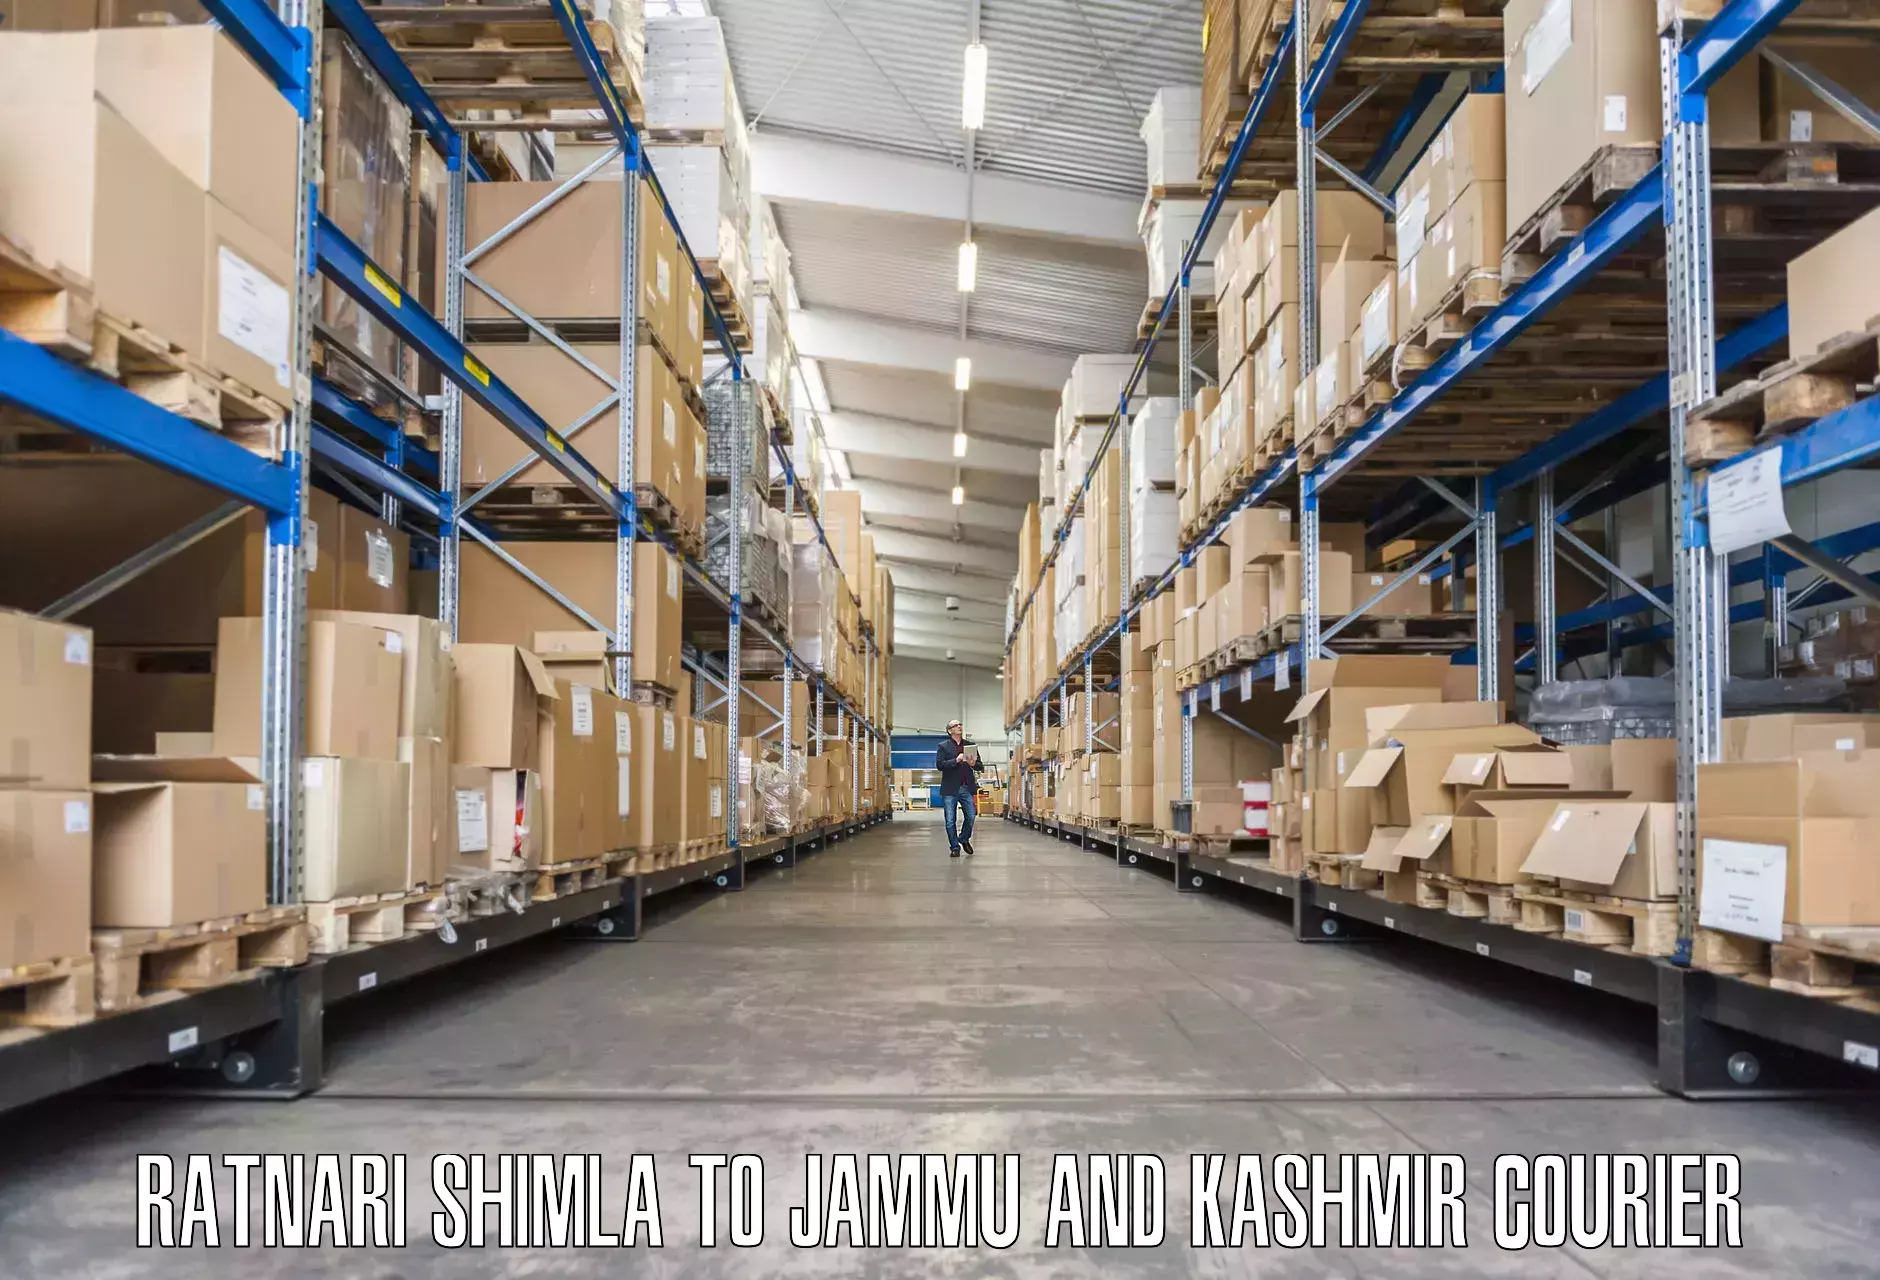 Expert goods movers Ratnari Shimla to Jammu and Kashmir